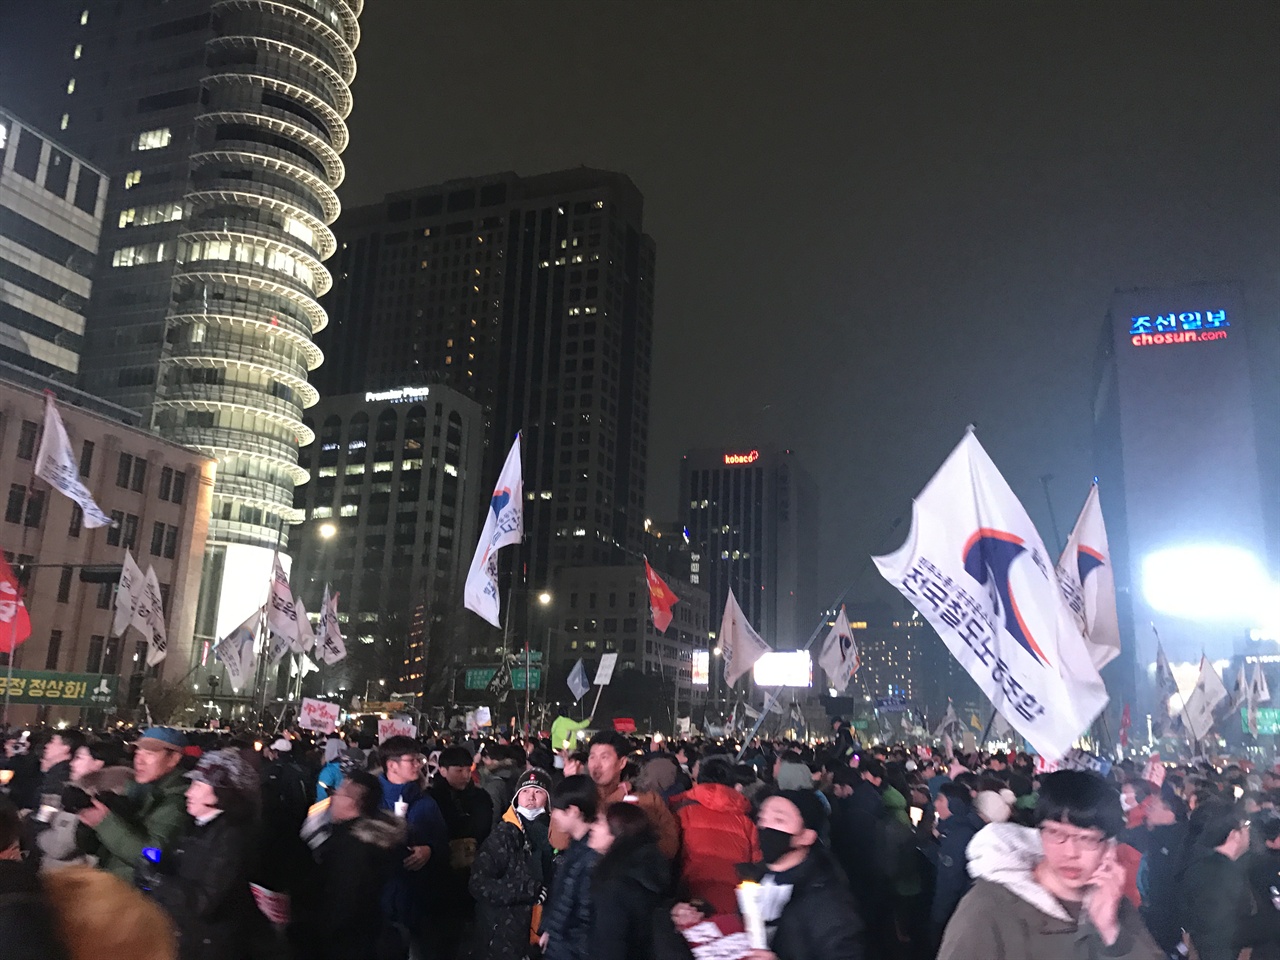 서울 광화문에서 열린 촛불 집회에 시민들이 참여해 박근혜 퇴진을 외치며 행진하고 있다.